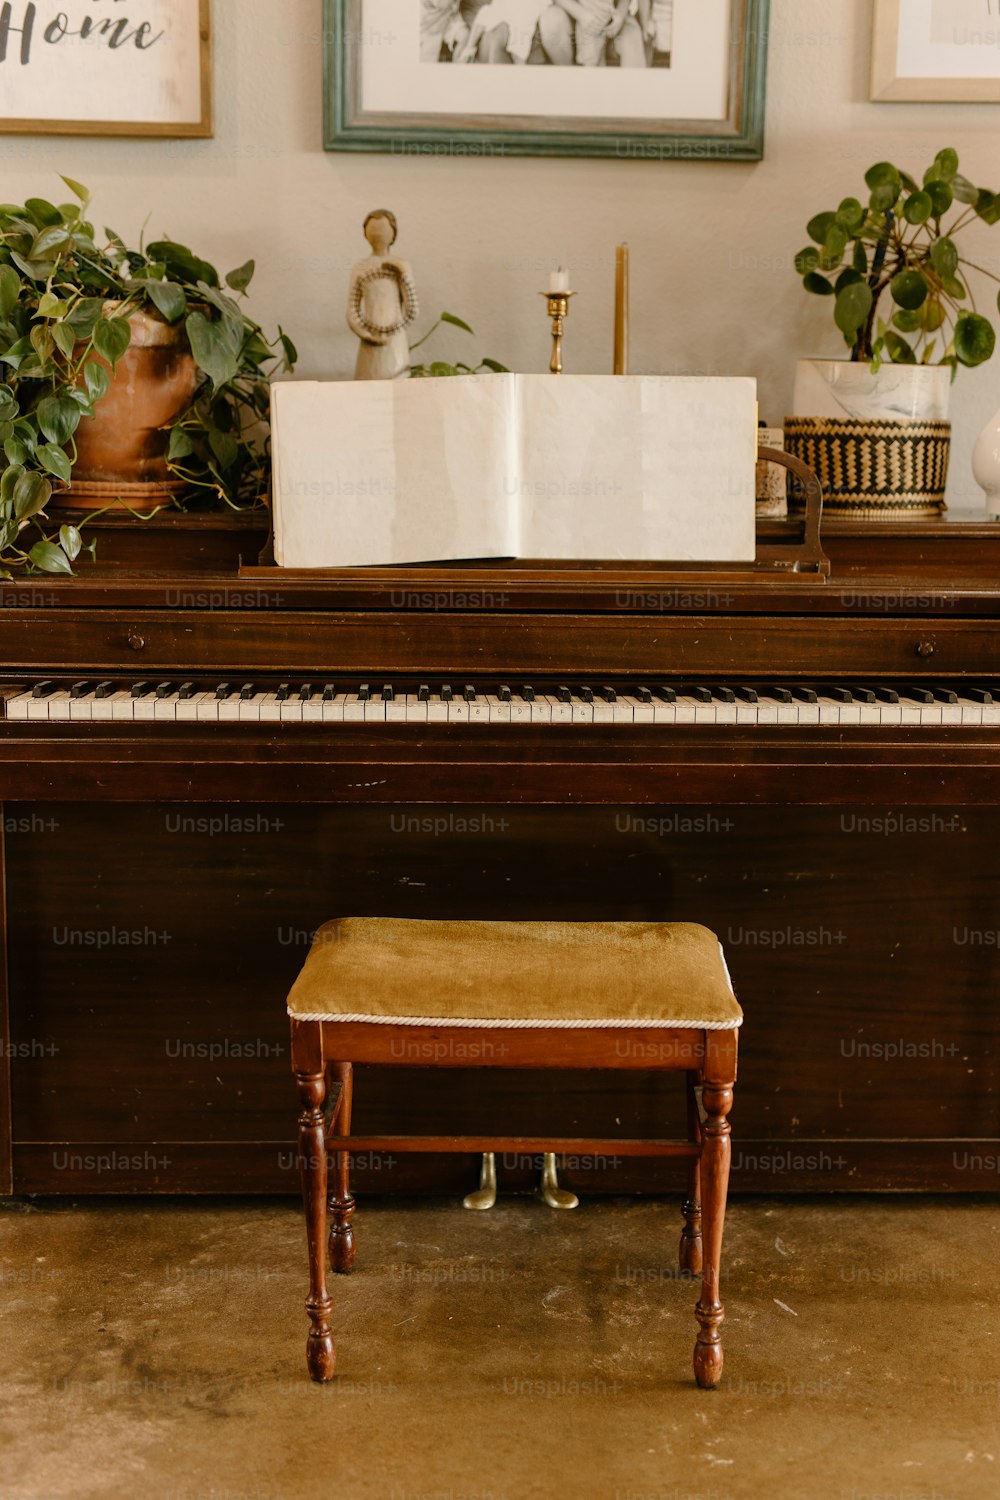 Un piano sentado frente a una imagen de una planta